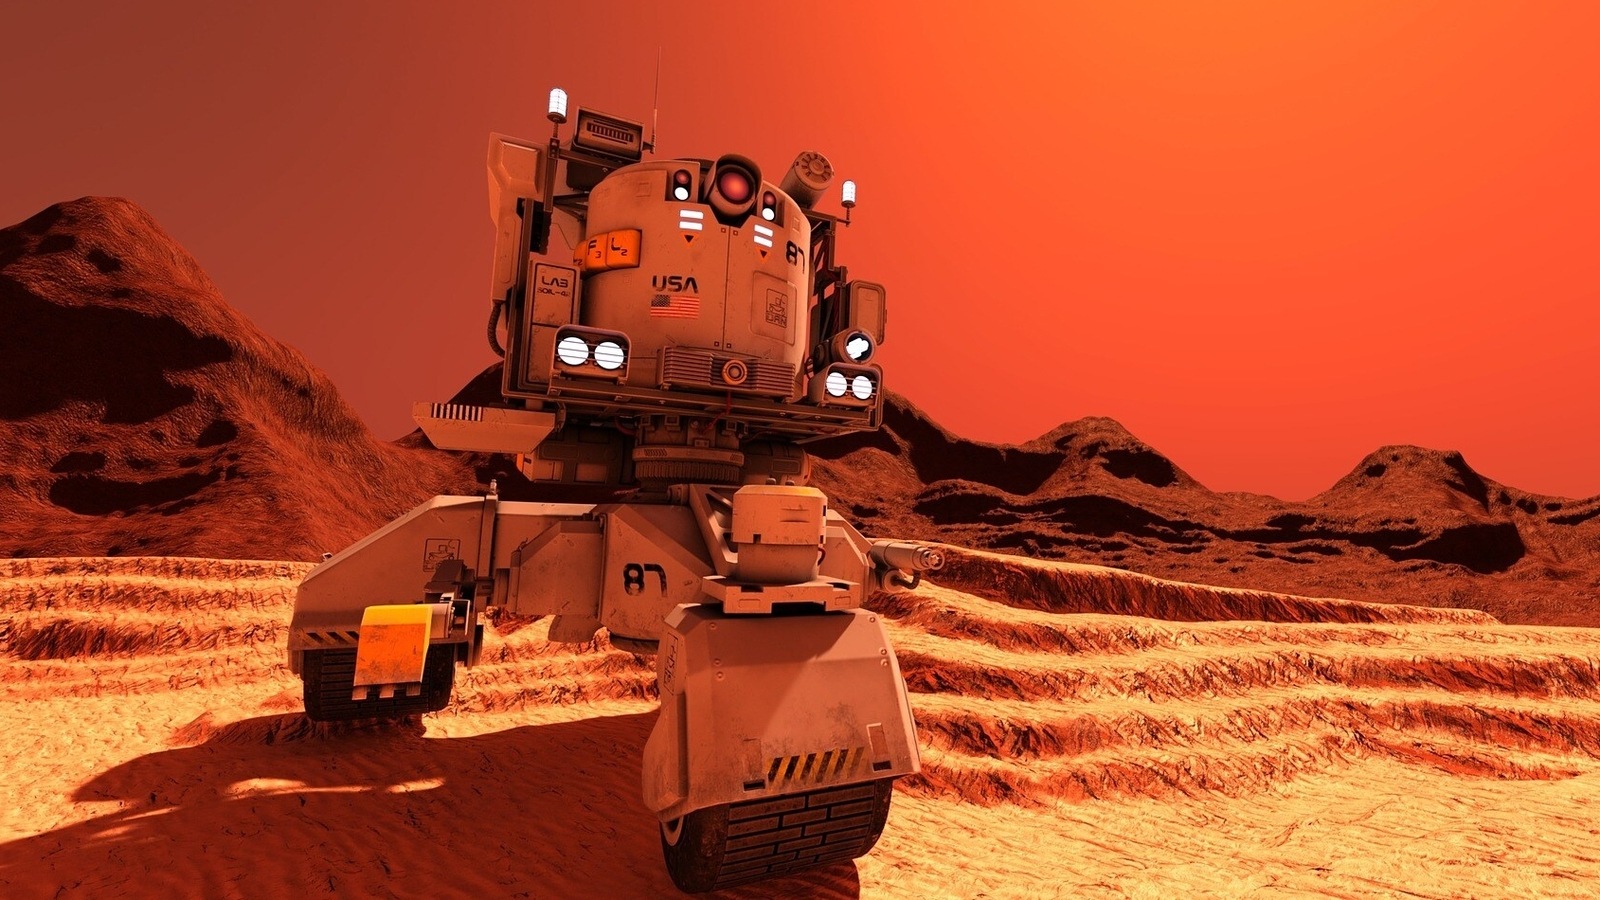 Photo of Vie sur Mars? Le rover Curiosity de la NASA découvre des signes dramatiques de vie sur la planète rouge